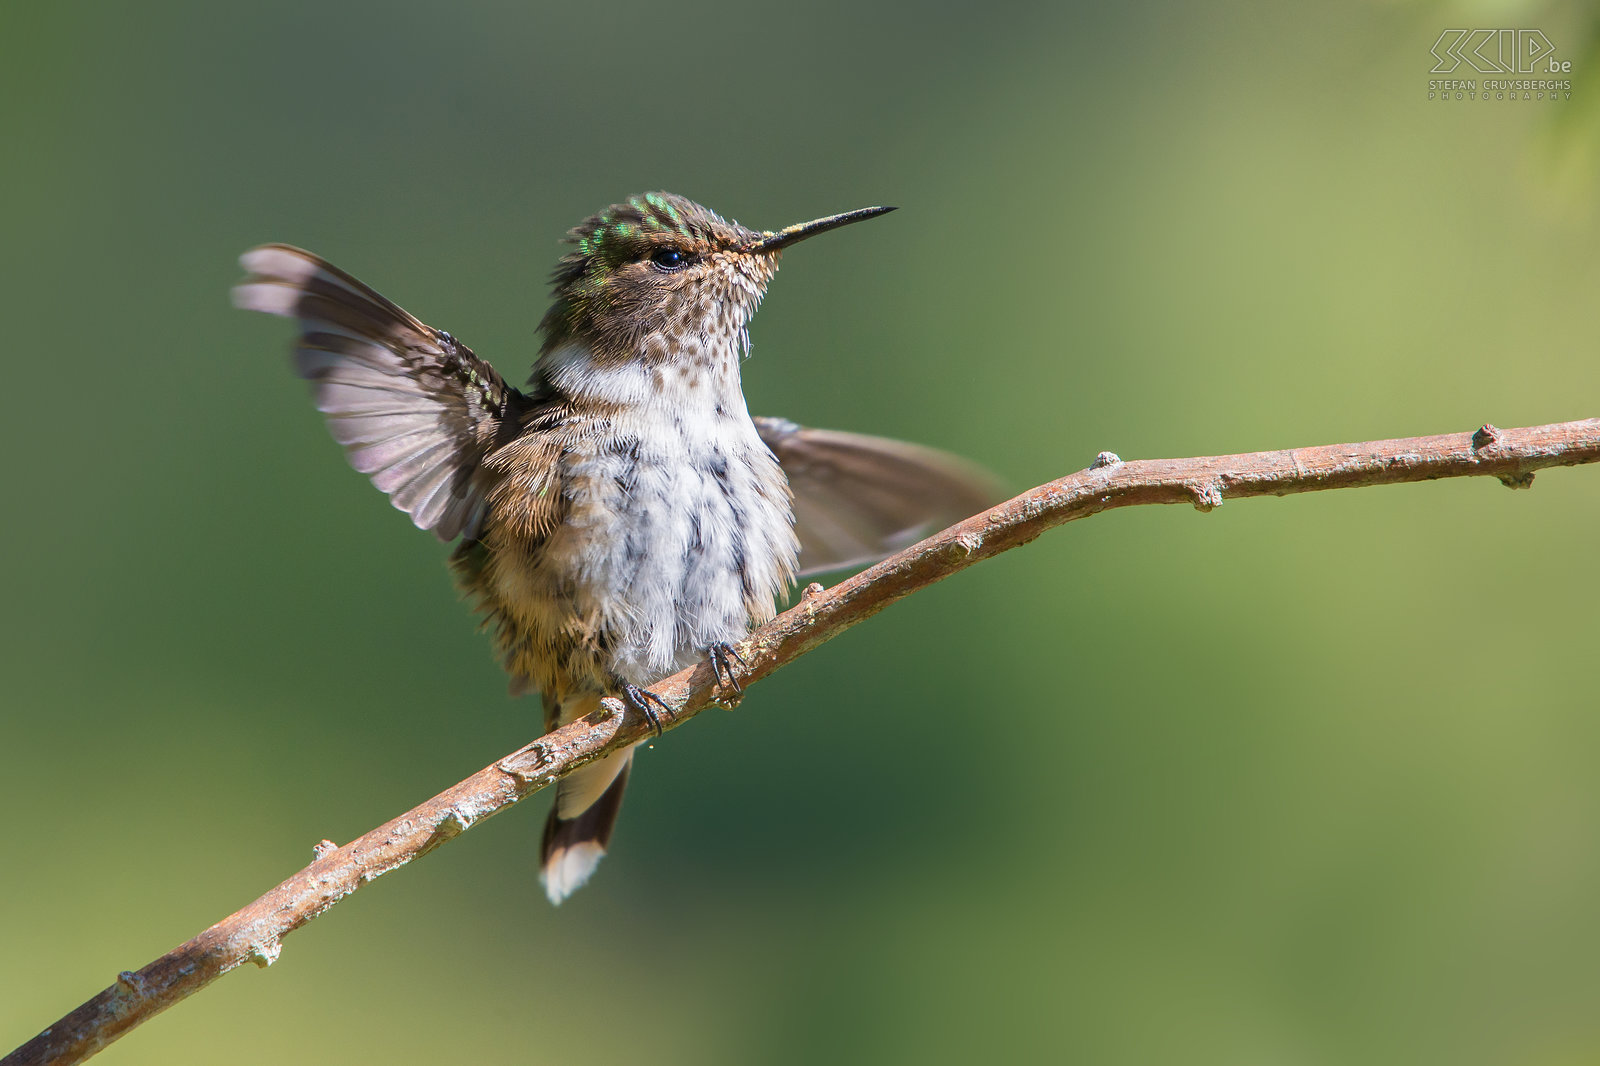 San Gerardo de Dota - Fonkelende kolibrie De fonkelende kolibrie (scintillant hummingbird, selasphorus Scintilla) is een van de kleinste kolibries (6-8cm) die alleen voorkomt in de bergen van Costa Rica. Kolibries hebben een zeer hoog metabolisme en ze drinken nectar uit verschillende kleine bloemen. Ze zweven in de lucht en kunnen hun vleugels ontzettend snel bewegen, meestal rond de 50 keer per seconde, maar soms tot wel 200 keer per seconde. Ze hebben lange en smalle snavels  en drinken met hun tong.<br />
 Stefan Cruysberghs